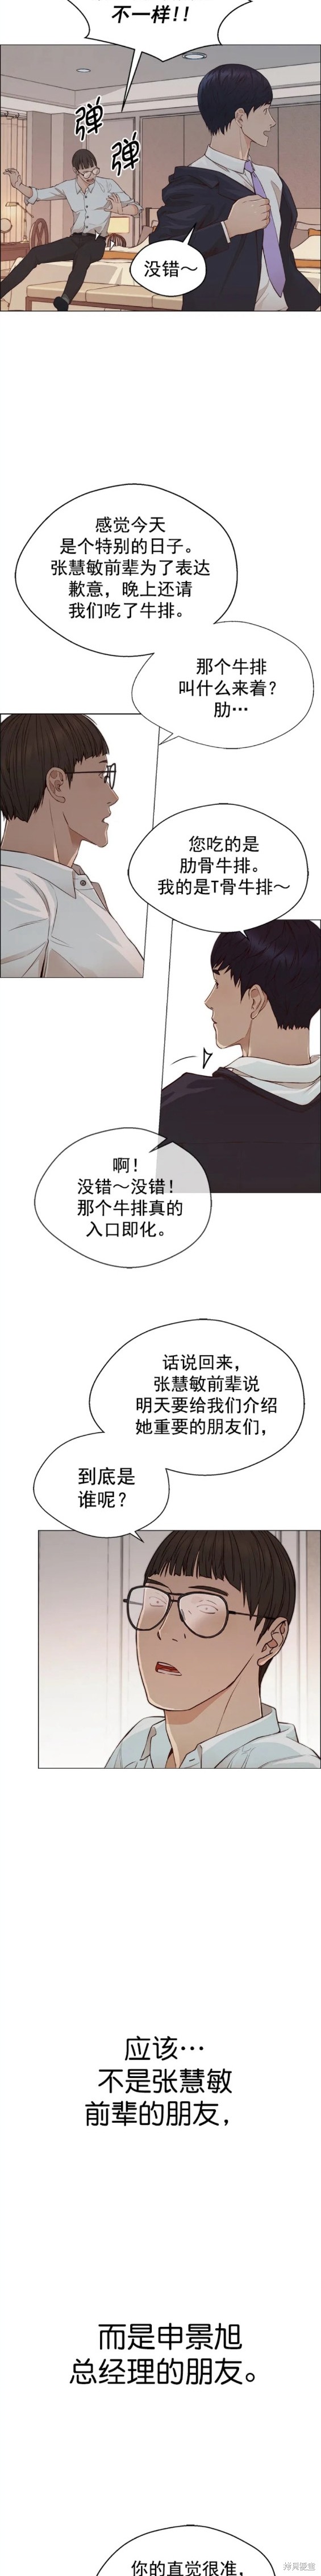 男子汉漫画,第133话15图